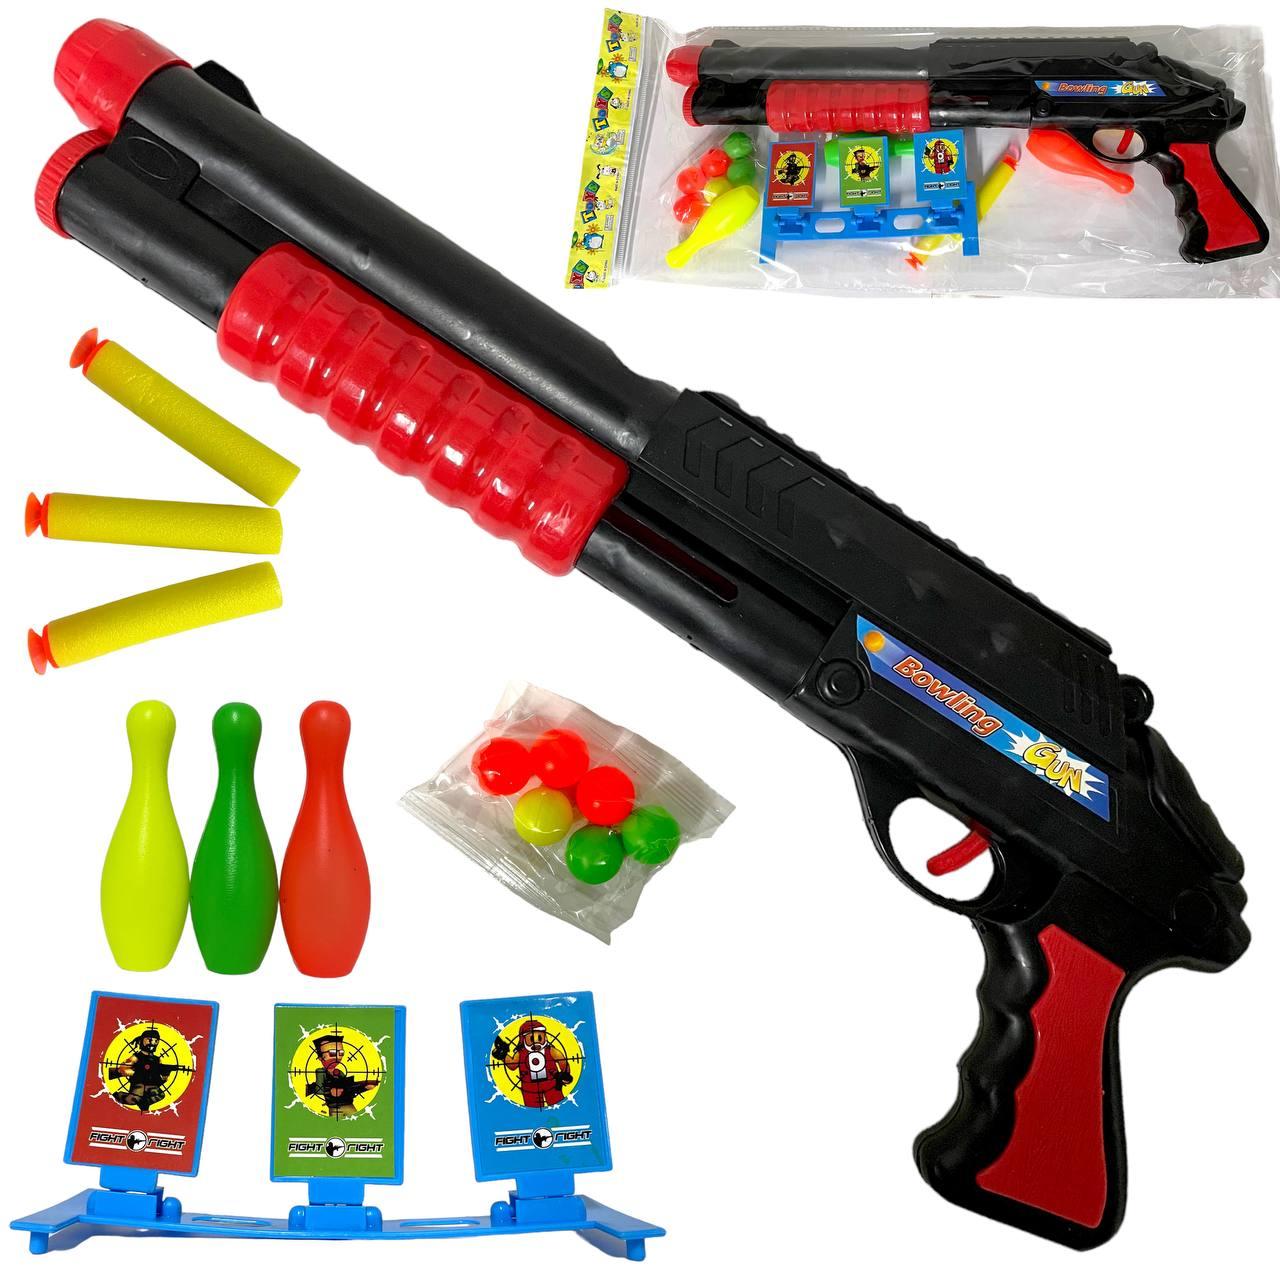 789-10 Gun Bowling Дробовик +кегли, шарики,патроны с мишенью в пакете, 44*16см